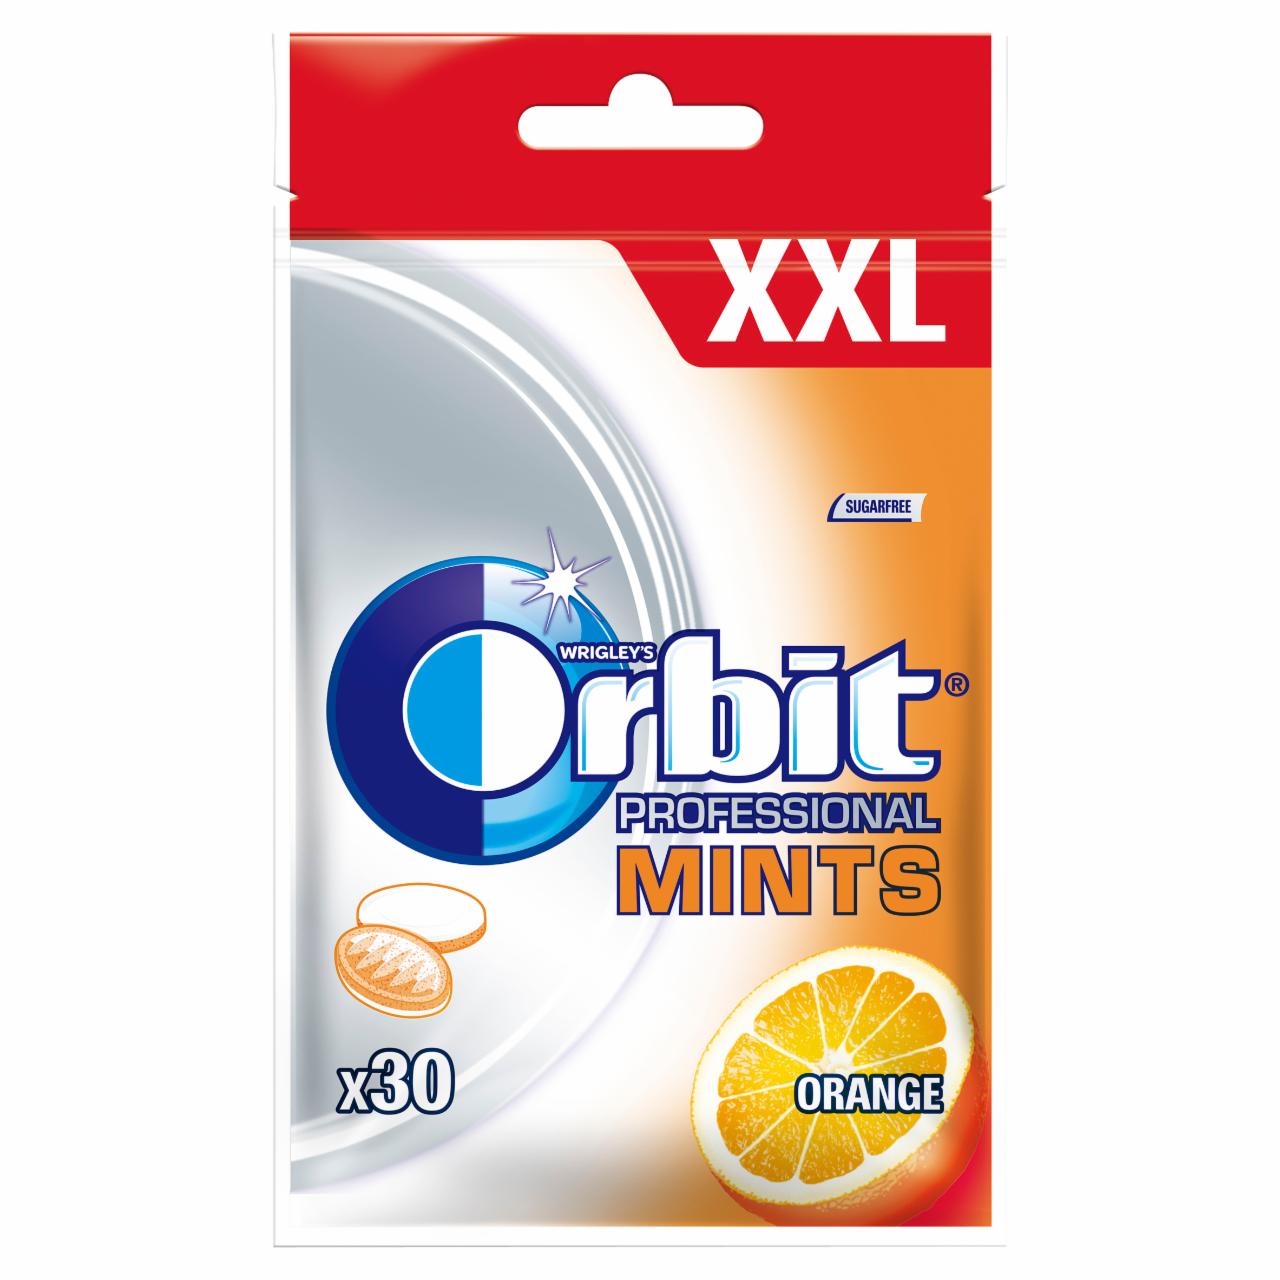 Zdjęcia - Orbit Professional Mints Orange XXL Cukierki bez cukru 30 g (30 cukierków)